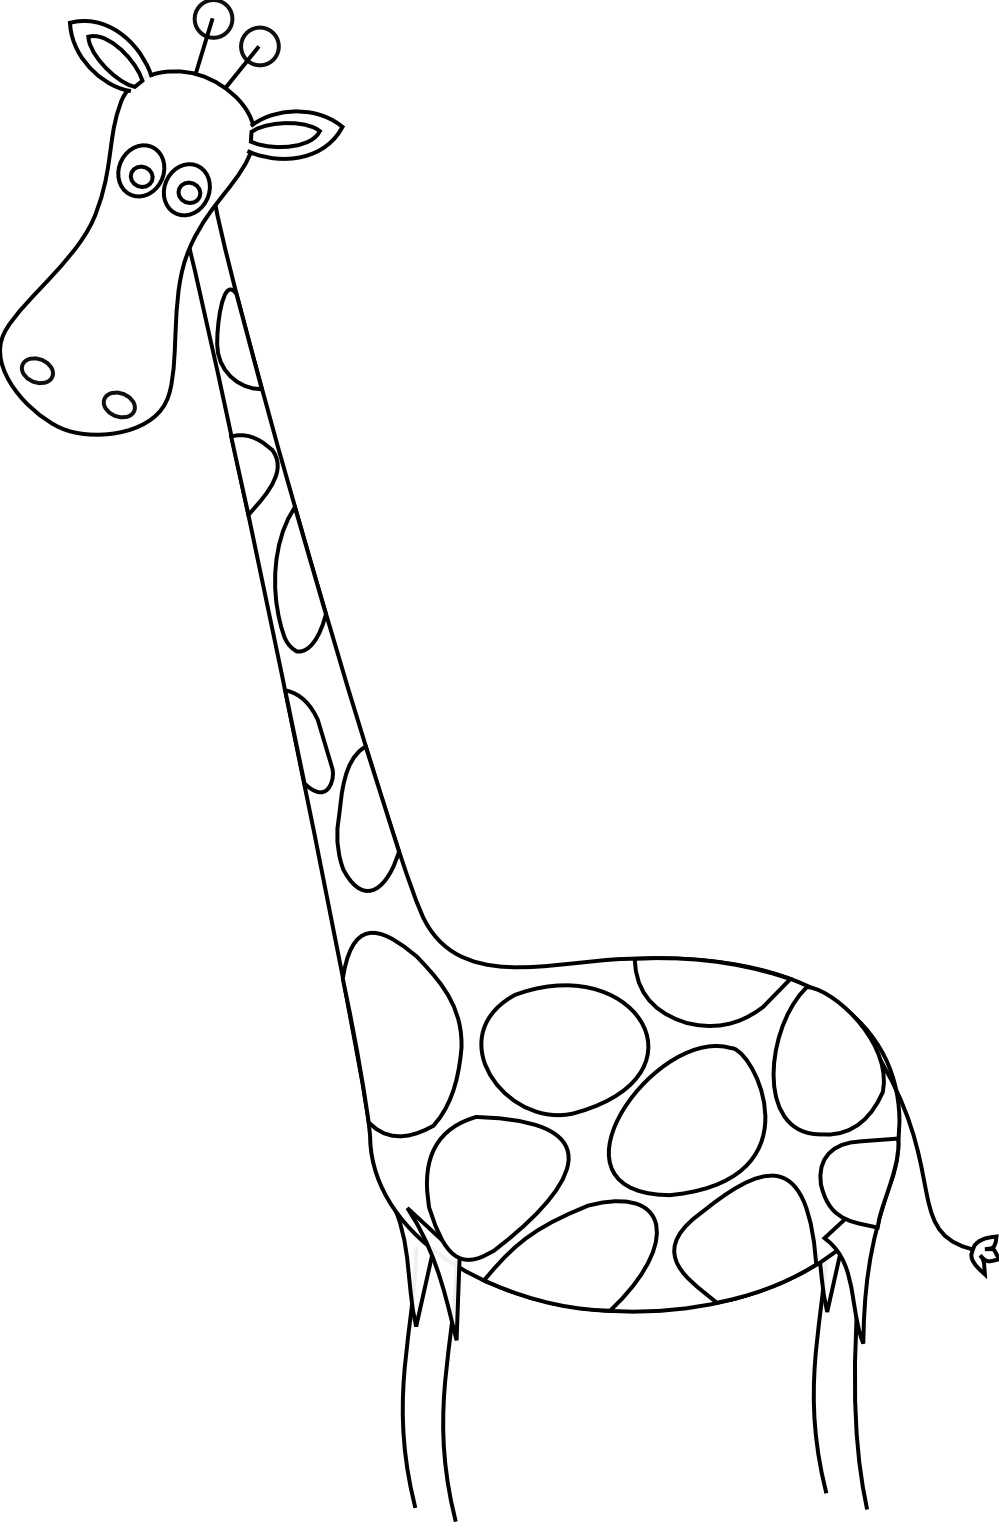 Жираф раскраска для детей. Жирафик раскраска для детей. Трафарет жирафа для рисования для детей. Контур жирафа для детей. На рисунке изображен жираф